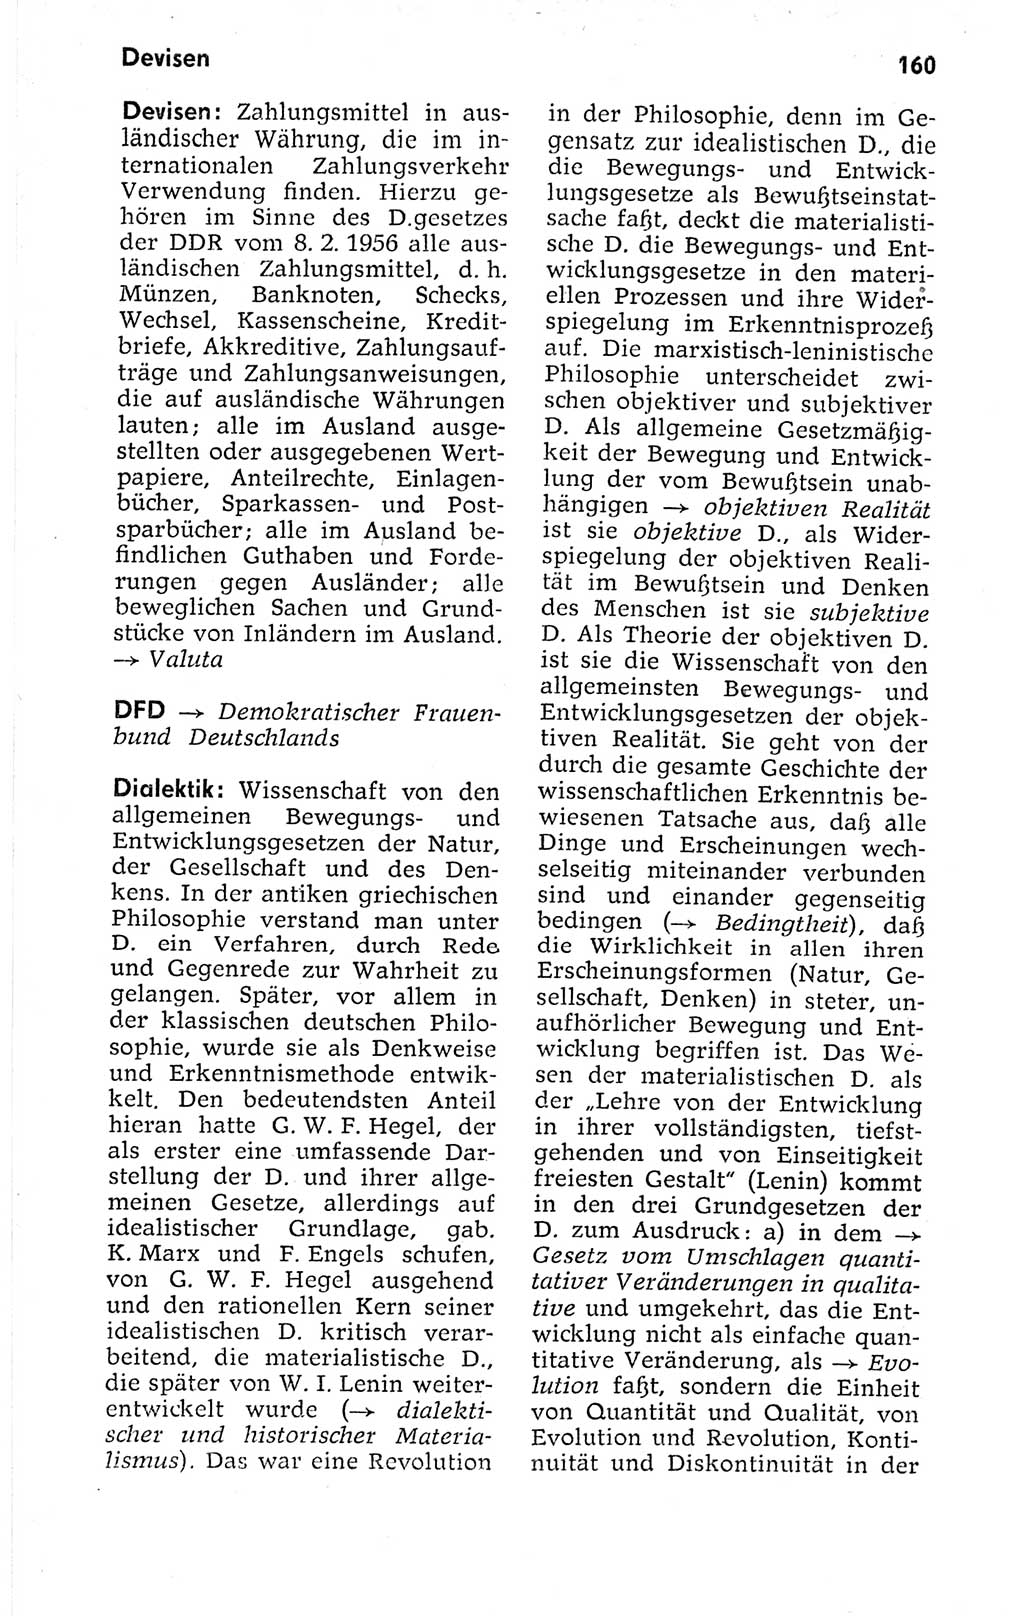 Kleines politisches Wörterbuch [Deutsche Demokratische Republik (DDR)] 1973, Seite 160 (Kl. pol. Wb. DDR 1973, S. 160)